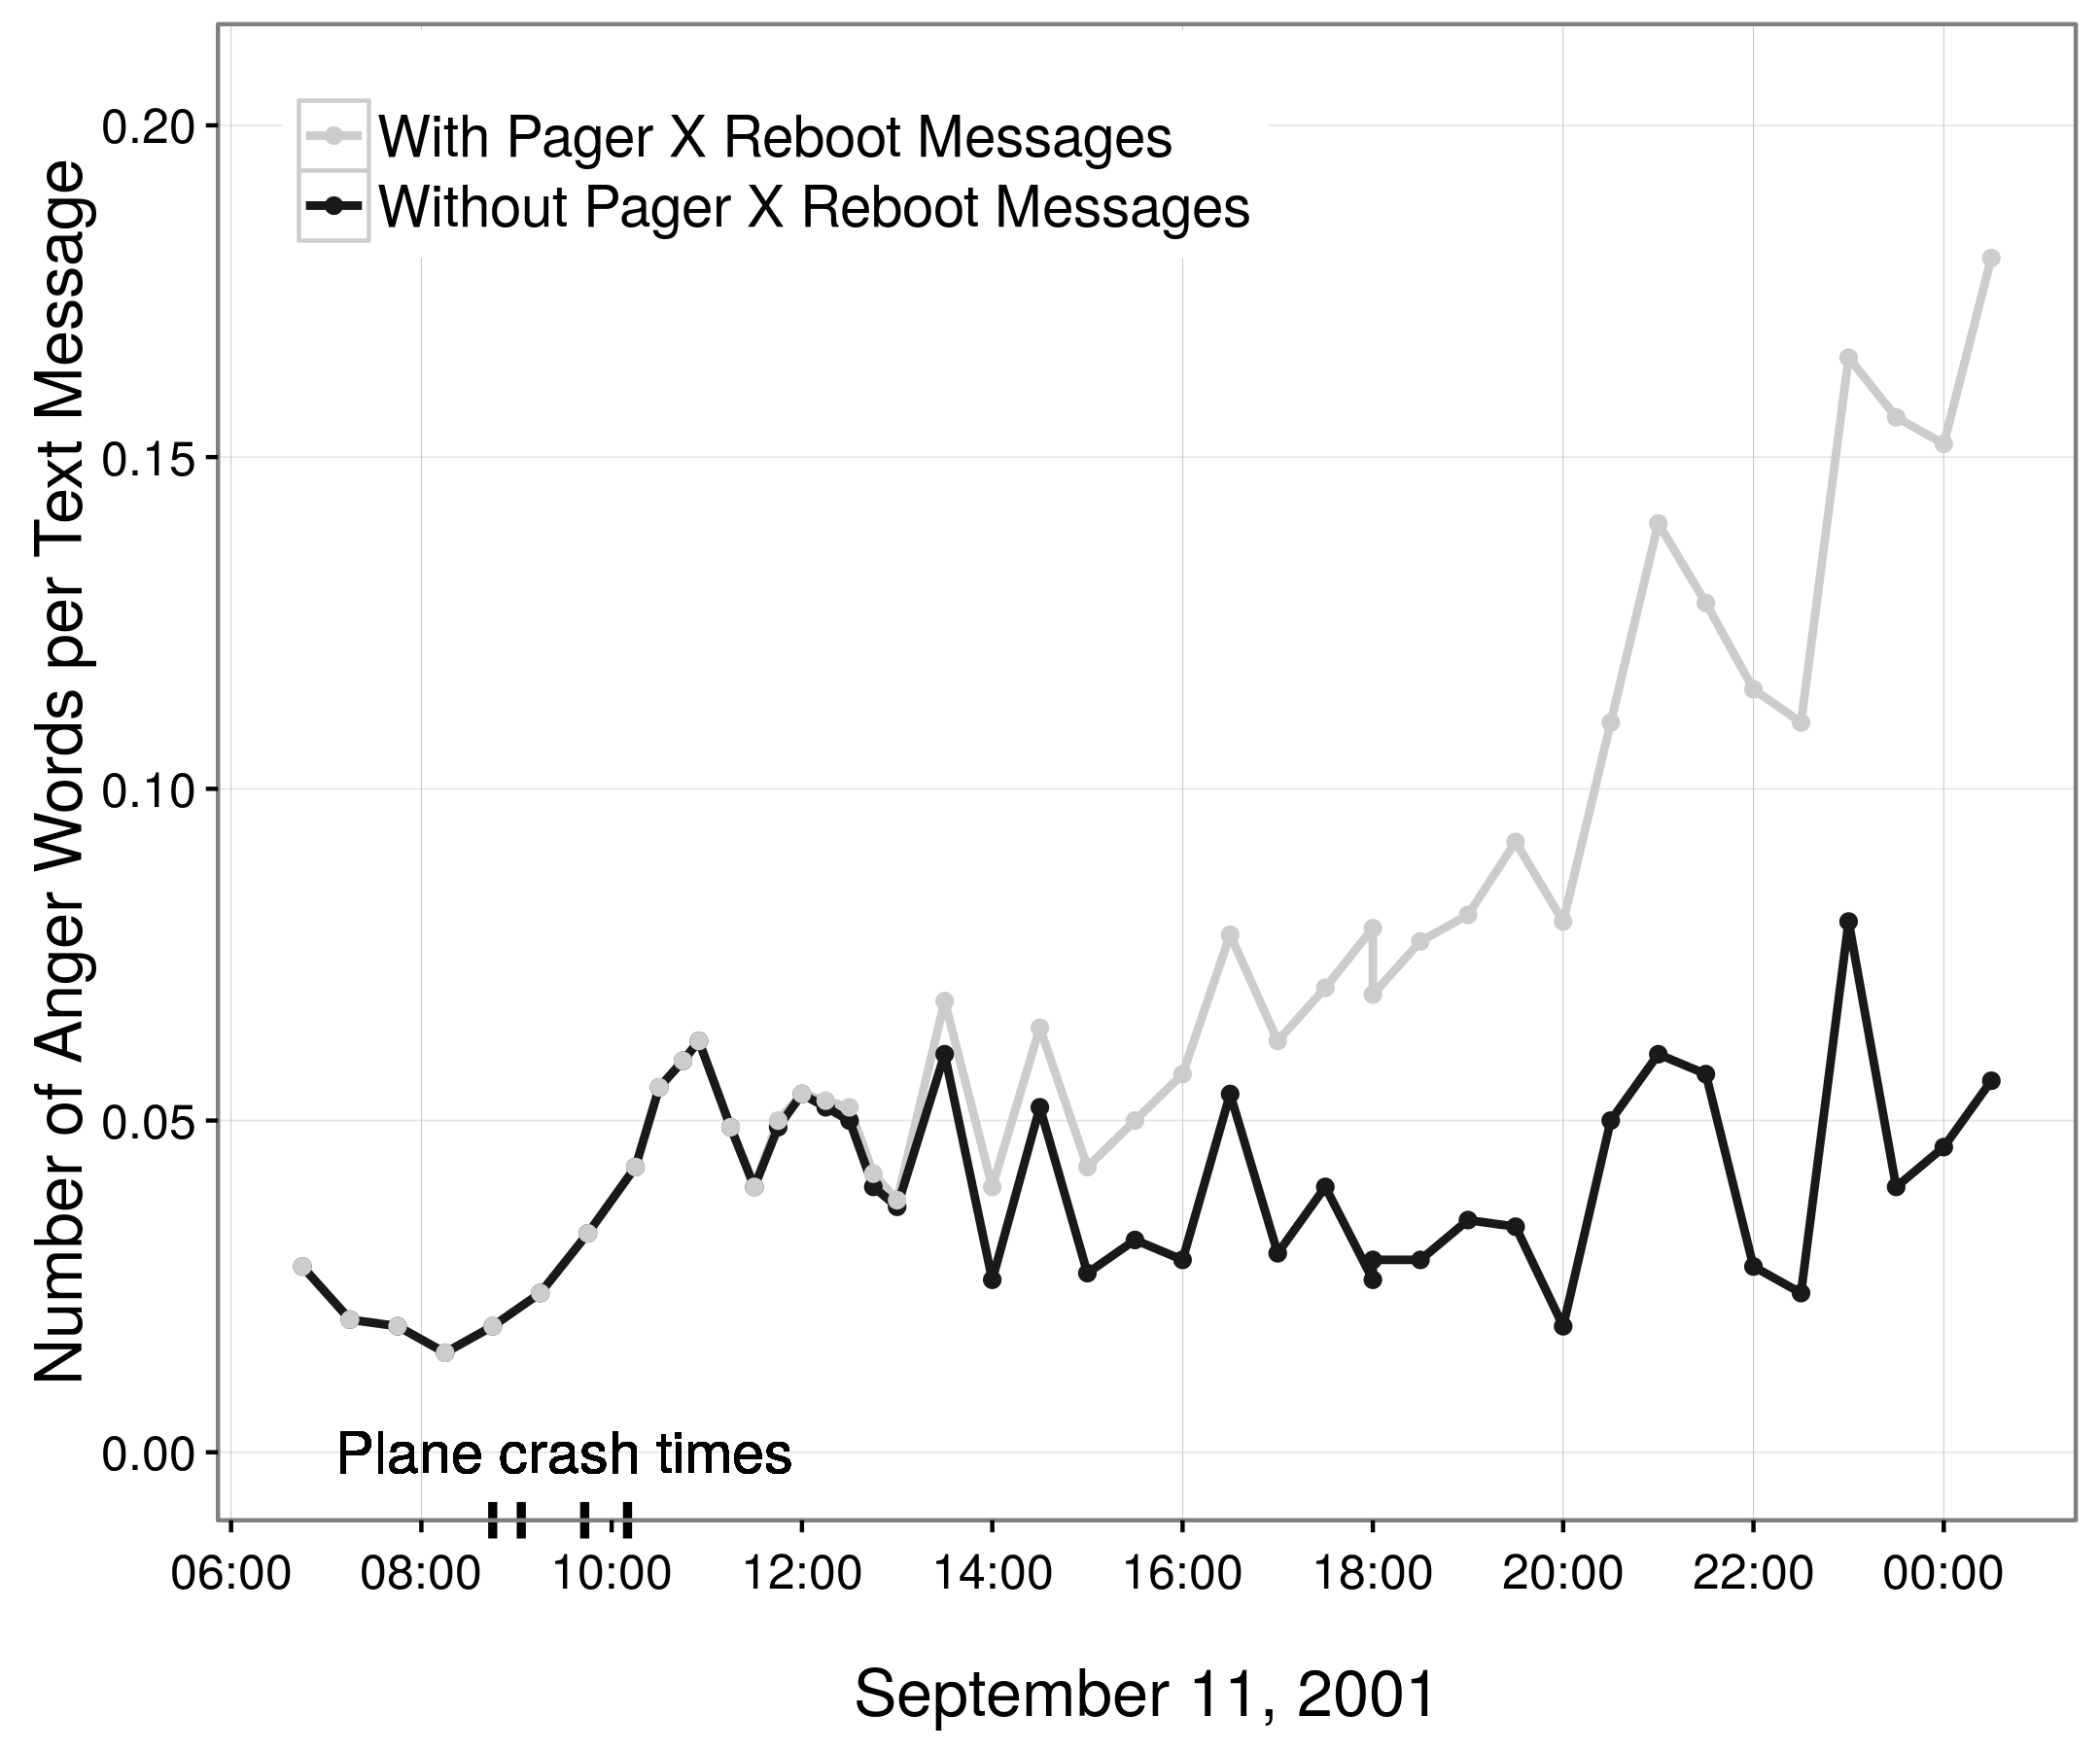 Фигура 2.2: Прогнозни тенденции в гняв в течение на 11-ти септември, 2001 въз основа на 85,000 американски пейджъри (Обратно, Kufner, и Еглофф 2010; Pury 2011; Обратно, Kufner, и Еглофф 2011). Първоначално, Back, Kufner, и Еглофф (2010) съобщава модел на увеличаване на гняв през целия ден. Въпреки това, повечето от тези очевидни гневни съобщения са били генерирани от един пейджър, че многократно изпрати следното съобщение: Reboot NT машина [име] в кабинета [име] в [място]: Критичен: [дата и час]. С отстранен това съобщение, видимо повишение в гняв изчезва (Pury 2011; Обратно, Kufner, и Еглофф 2011). Тази цифра е възпроизвеждане на фигура 1В в Pury (2011).